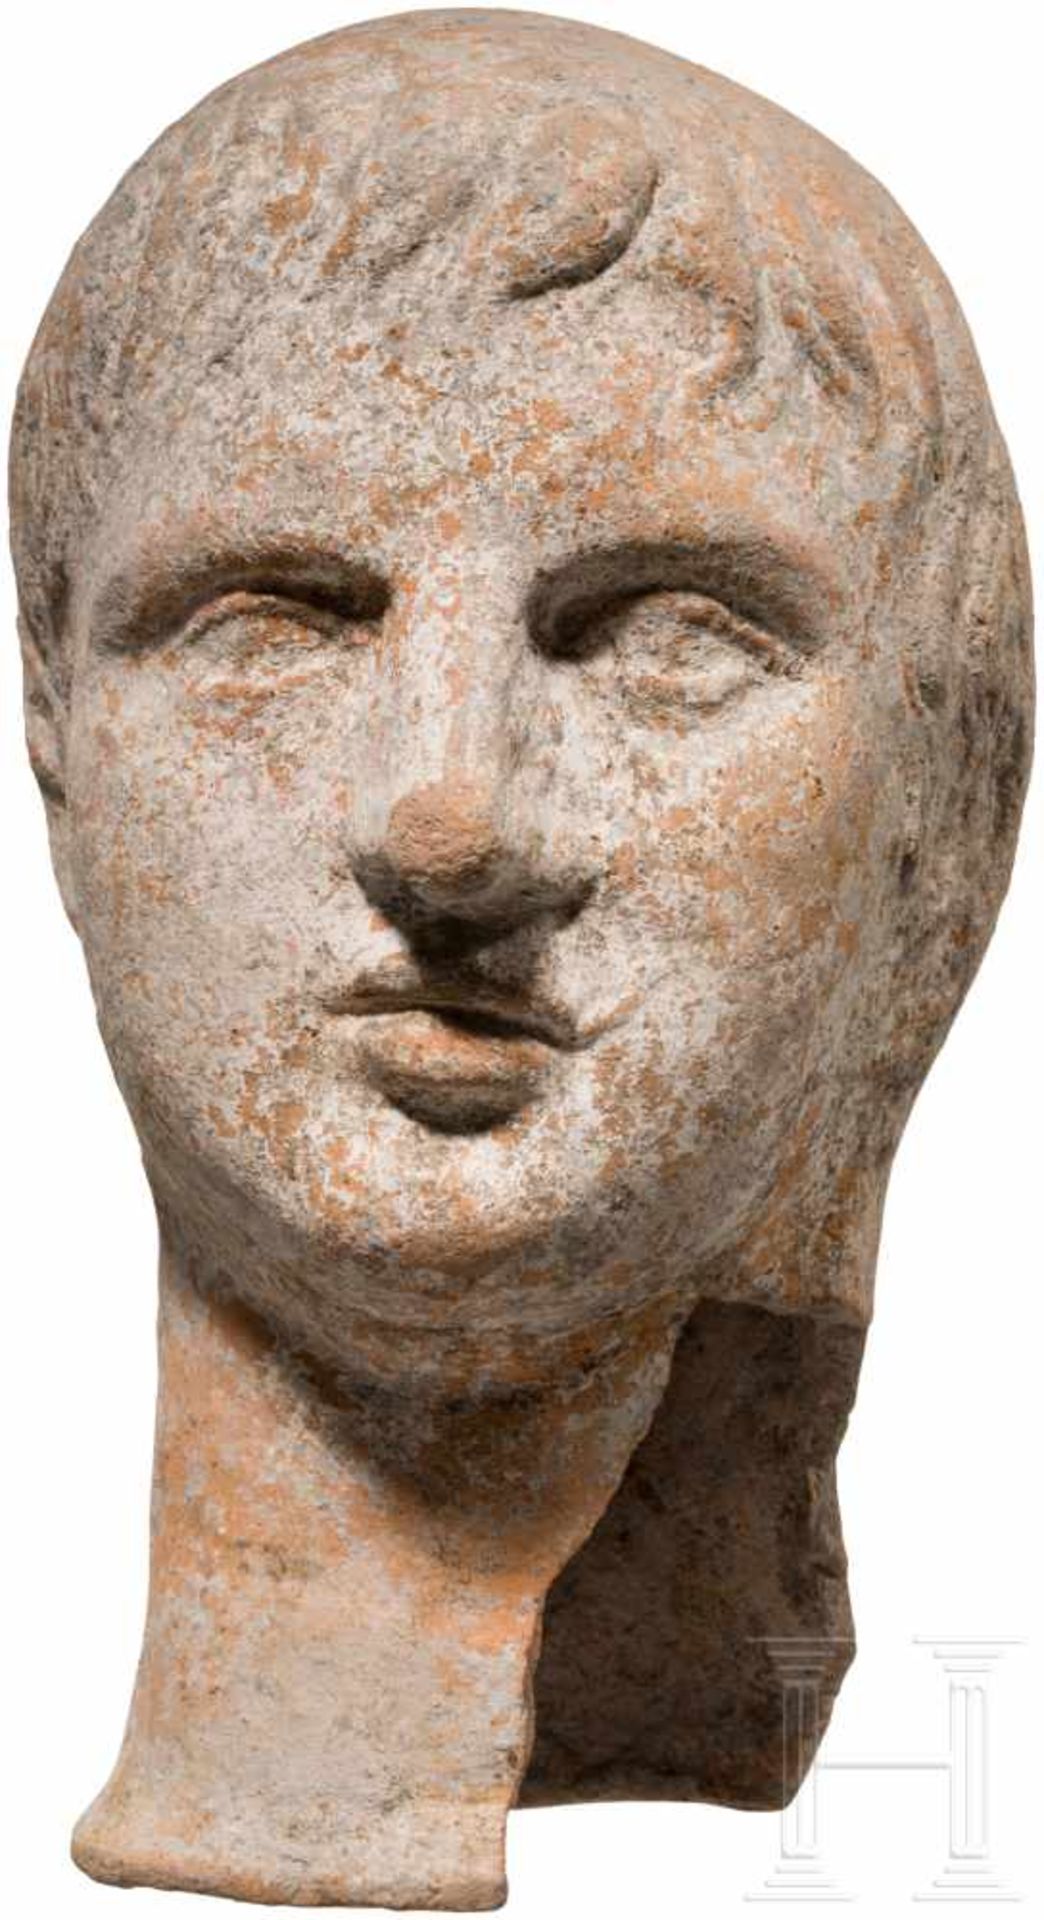 Etruskischer Votivkopf aus Ton, 3. - 2. Jhdt. v. Chr.Leicht unterlebensgroßer Terrakottakopf eines